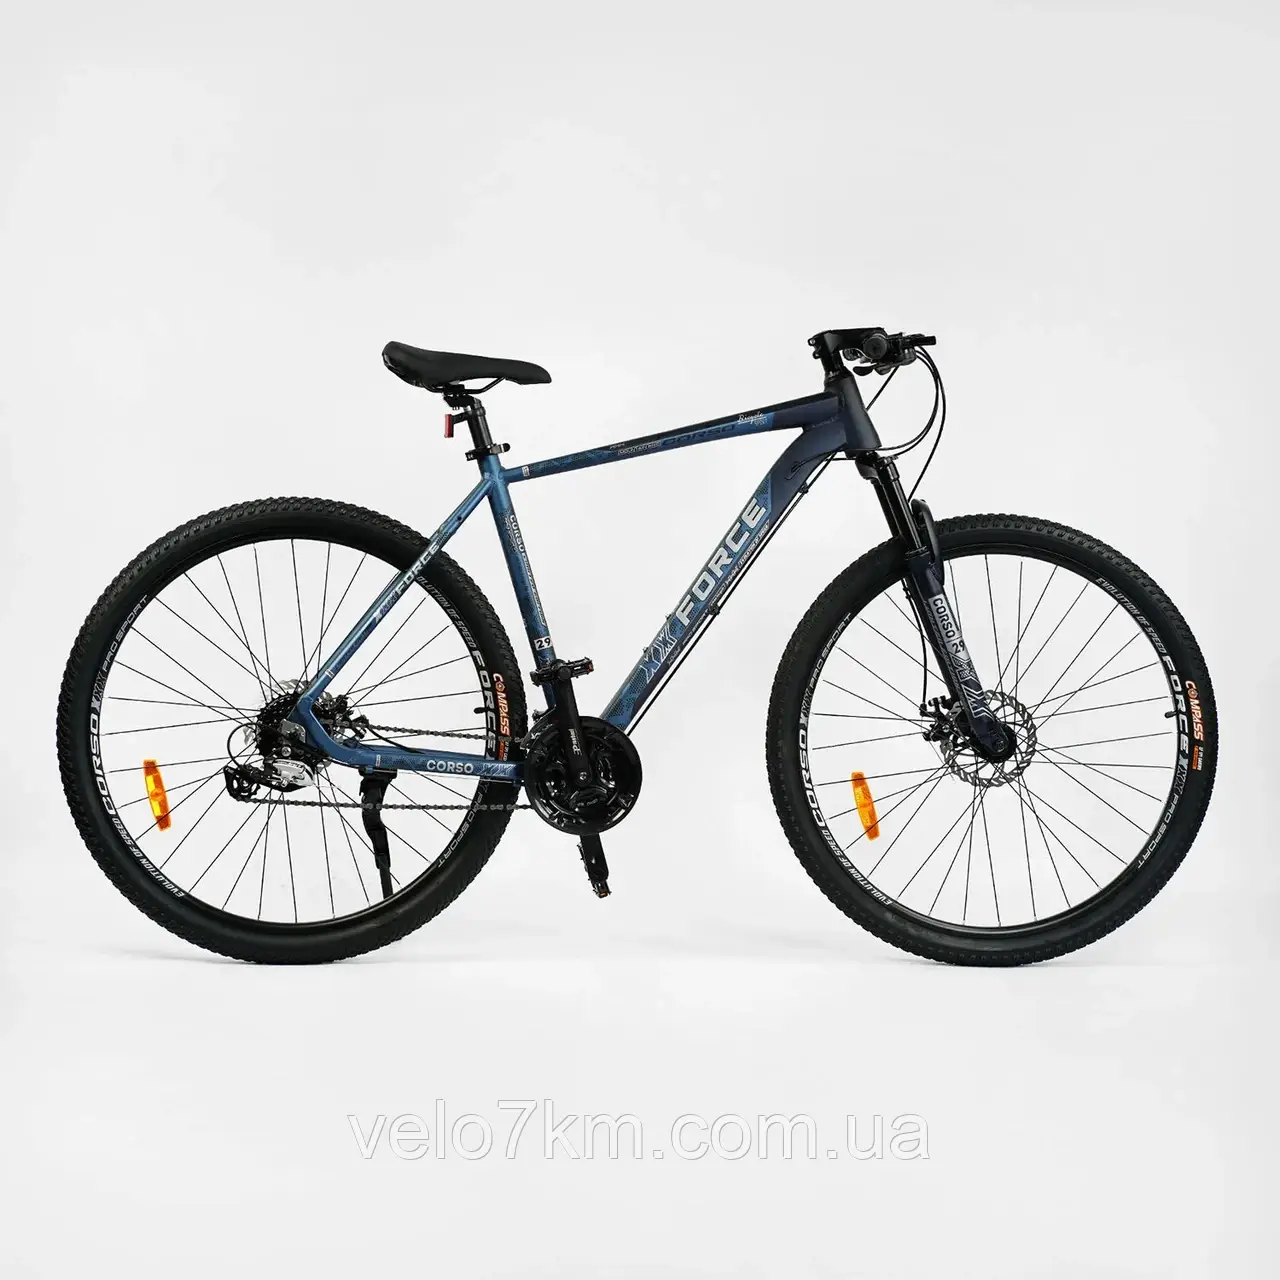 Гірський алюмінієвий велосипед Corso X-Force 29" рама 21" комплектація Shimano Altus, 24 швидкостей, зібран на 75%